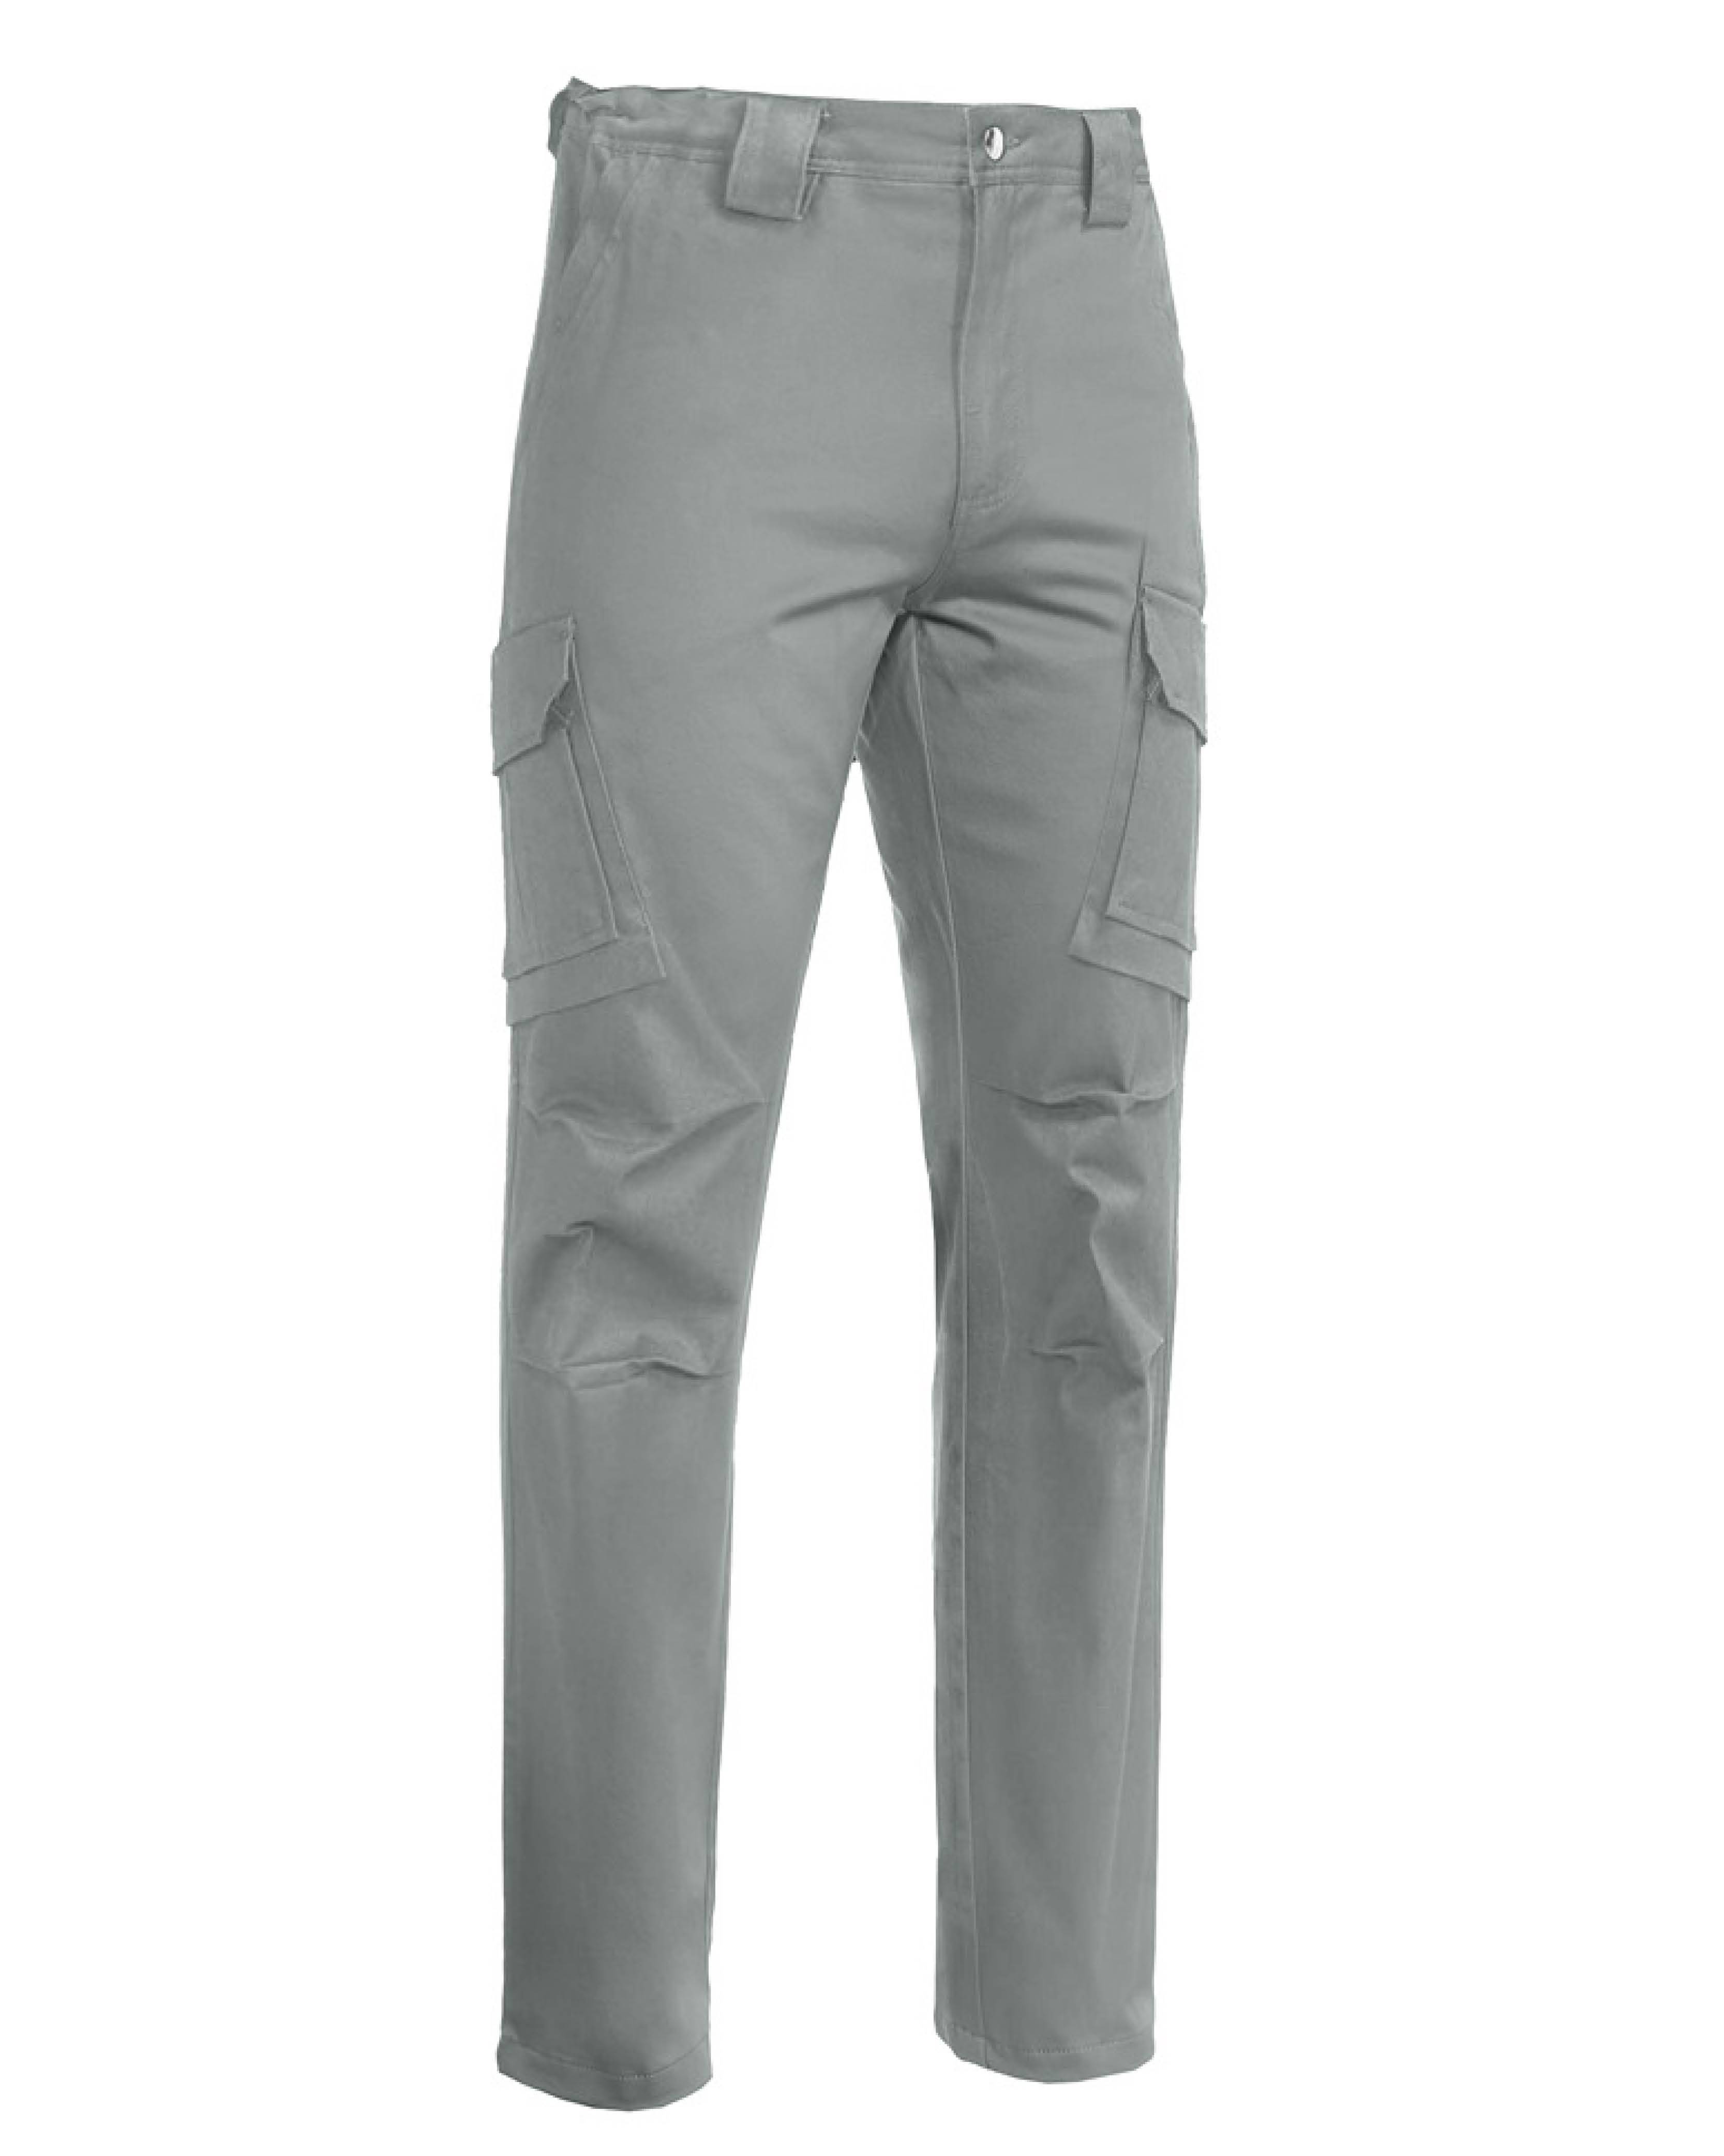 Modello di pantalone multitasche grigio, che può essere realizzato con tessuto antivirale 